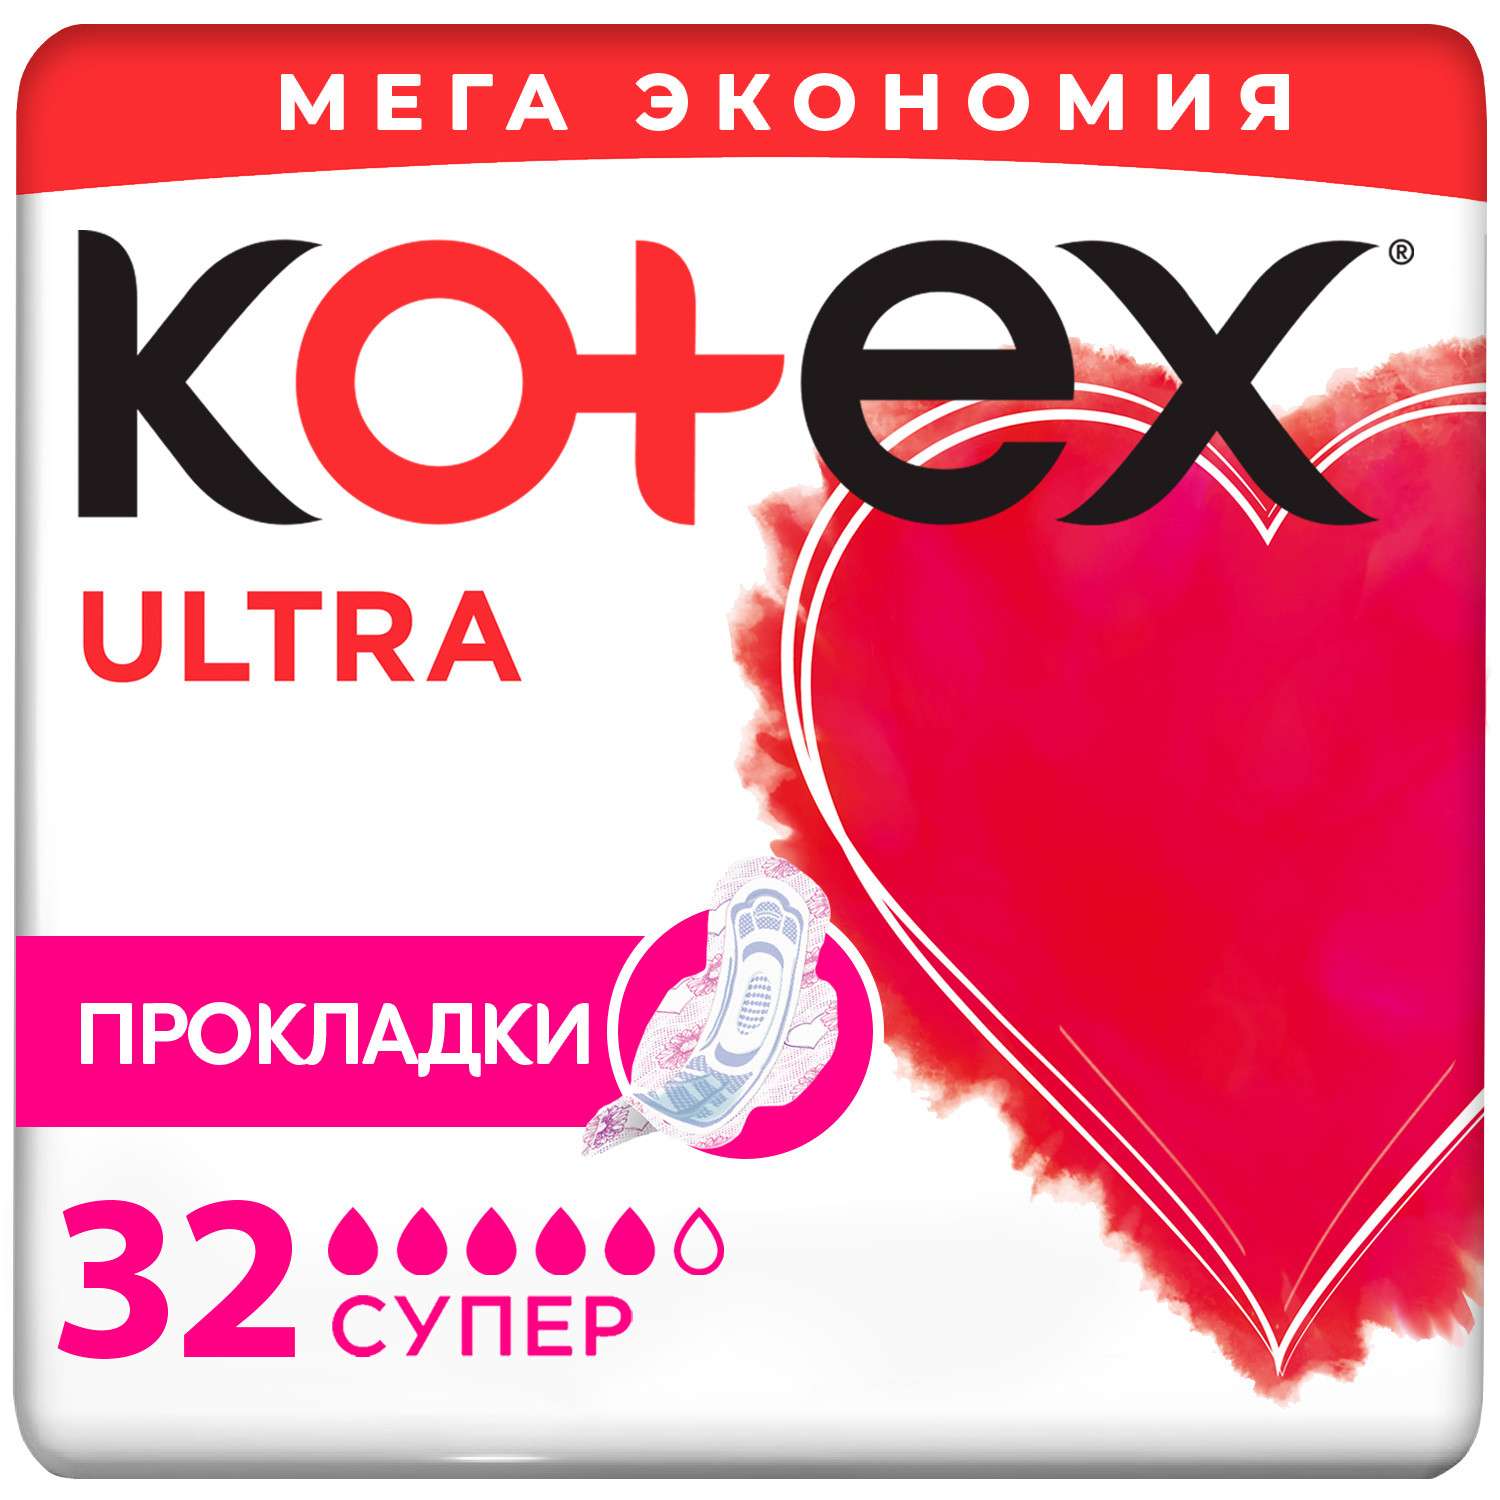 Прокладки Kotex Ultra Супер 32шт - фото 1